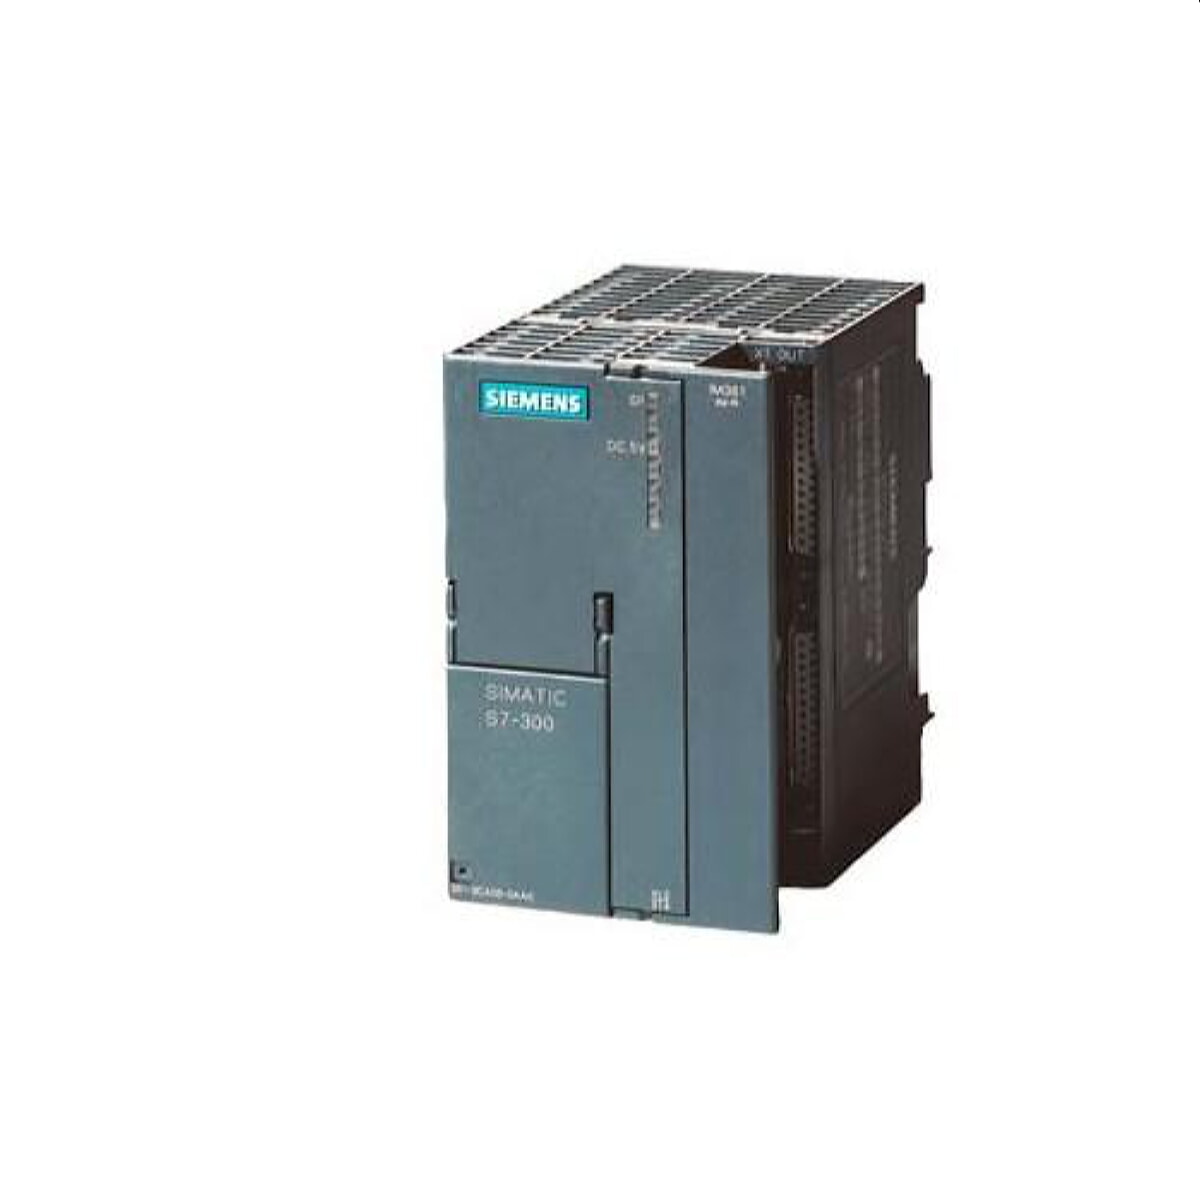 Siemens Anschaltmodul 6ES7365-0BA01-0AA0